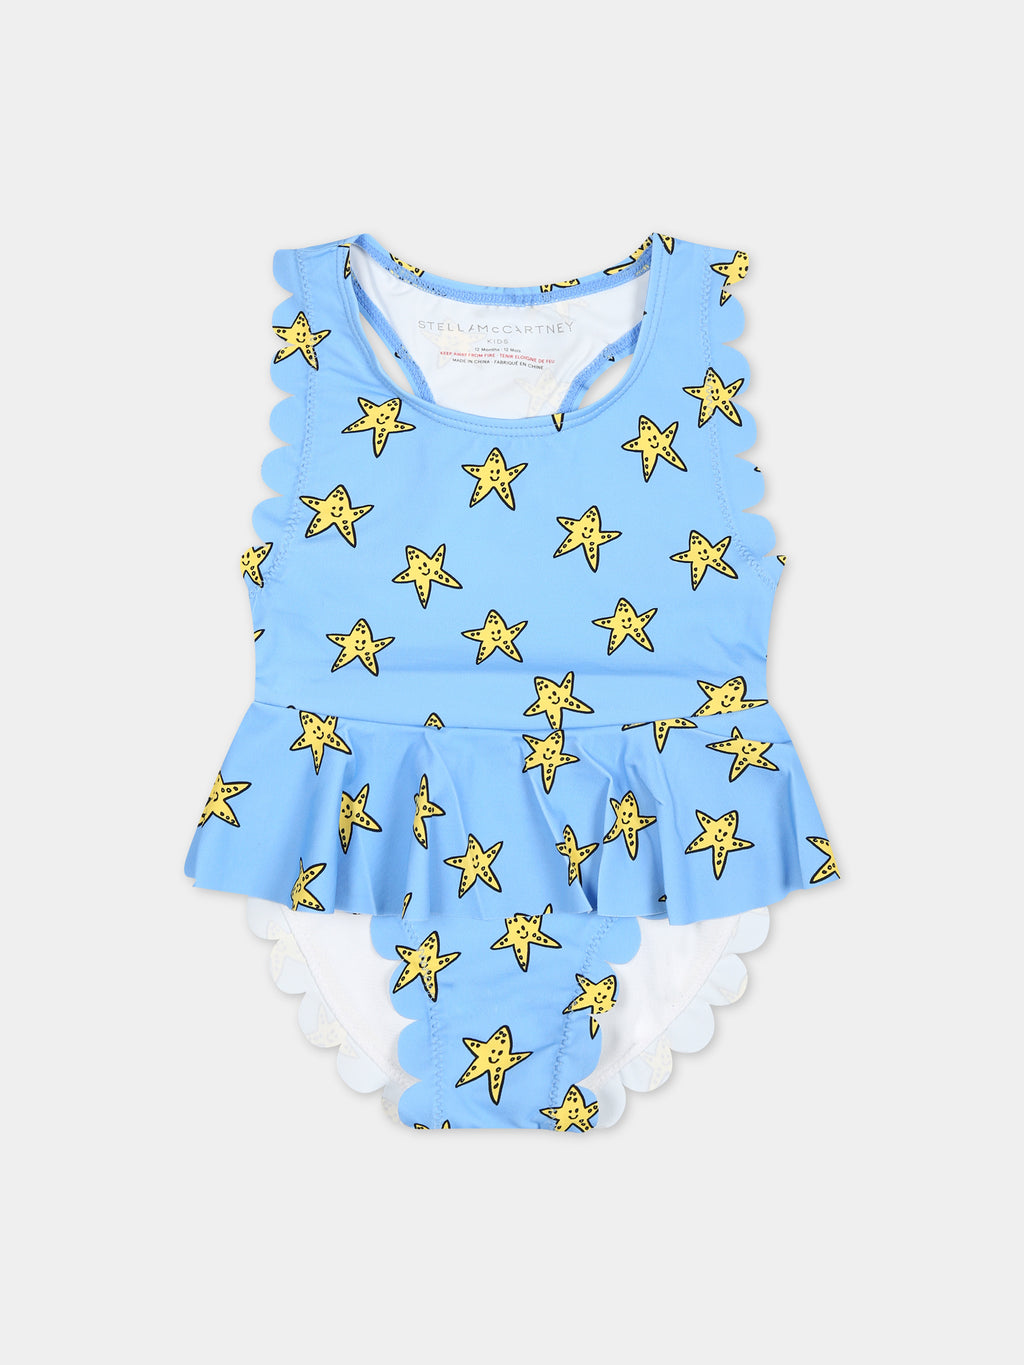 Maillot de bain bleu ciel pour bébé fille avec des étoiles de mer